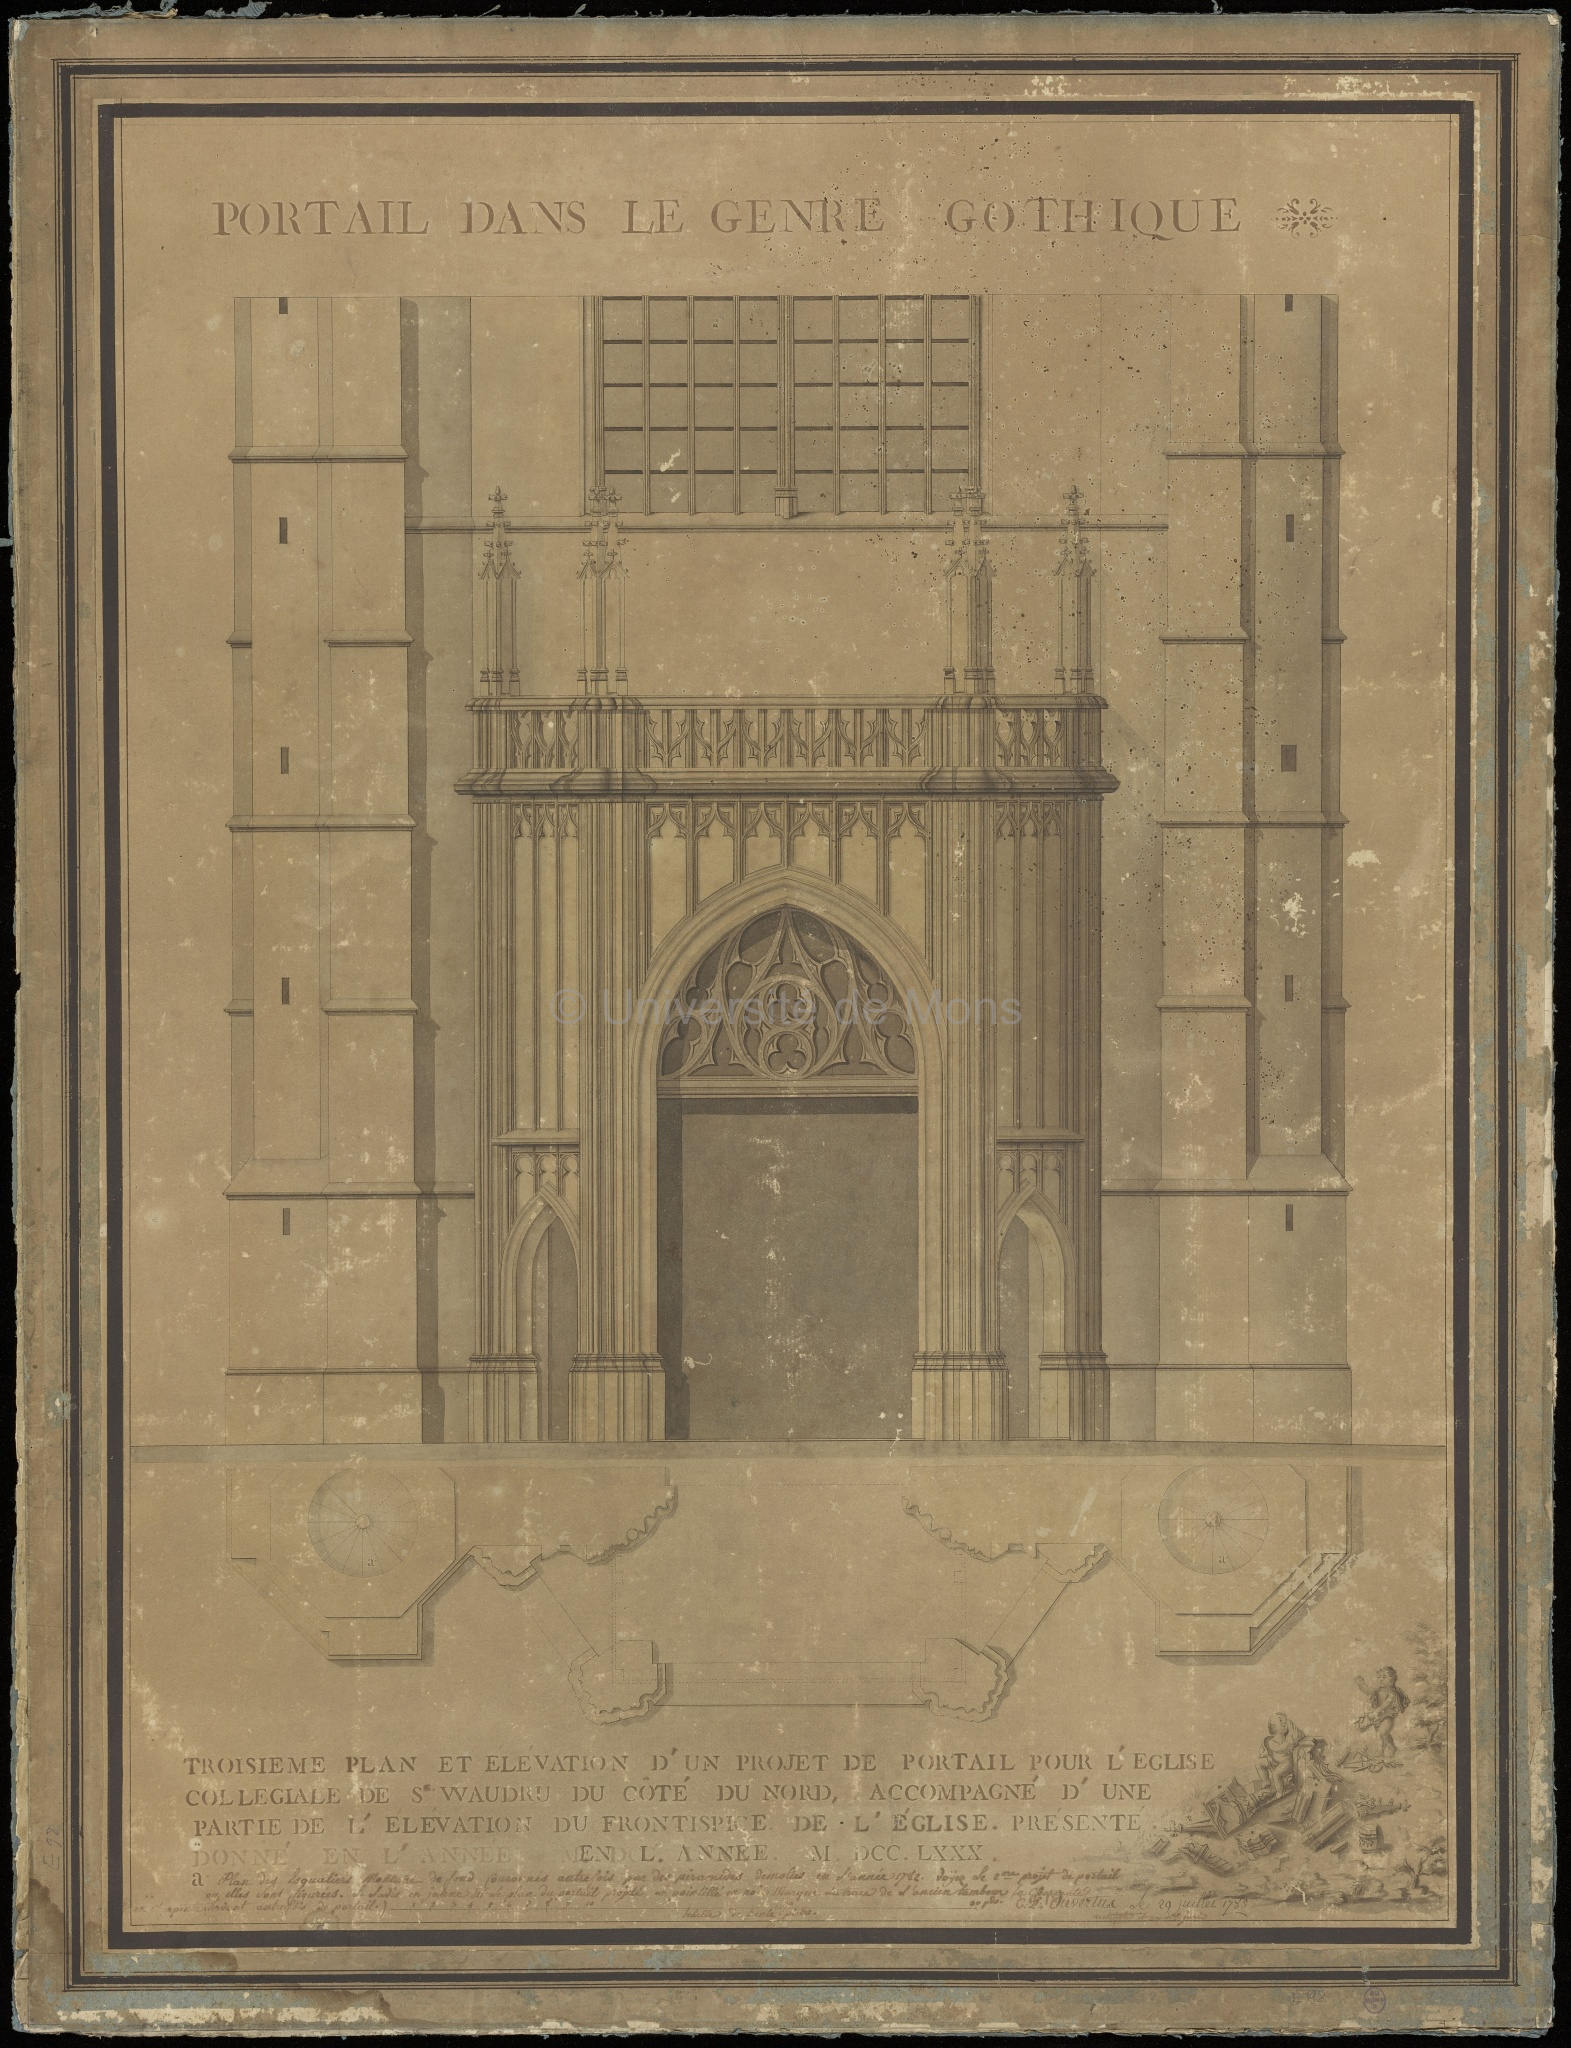 Portail dans le genre gothique : troisième plan et élévation d’un projet de portail pour l’église collégiale de Ste Waudru du côté du nord, accompagné d’une partie de l’élévation du frontispice de l’église présenté donné en l’année M.DCC.LXXX [1780]